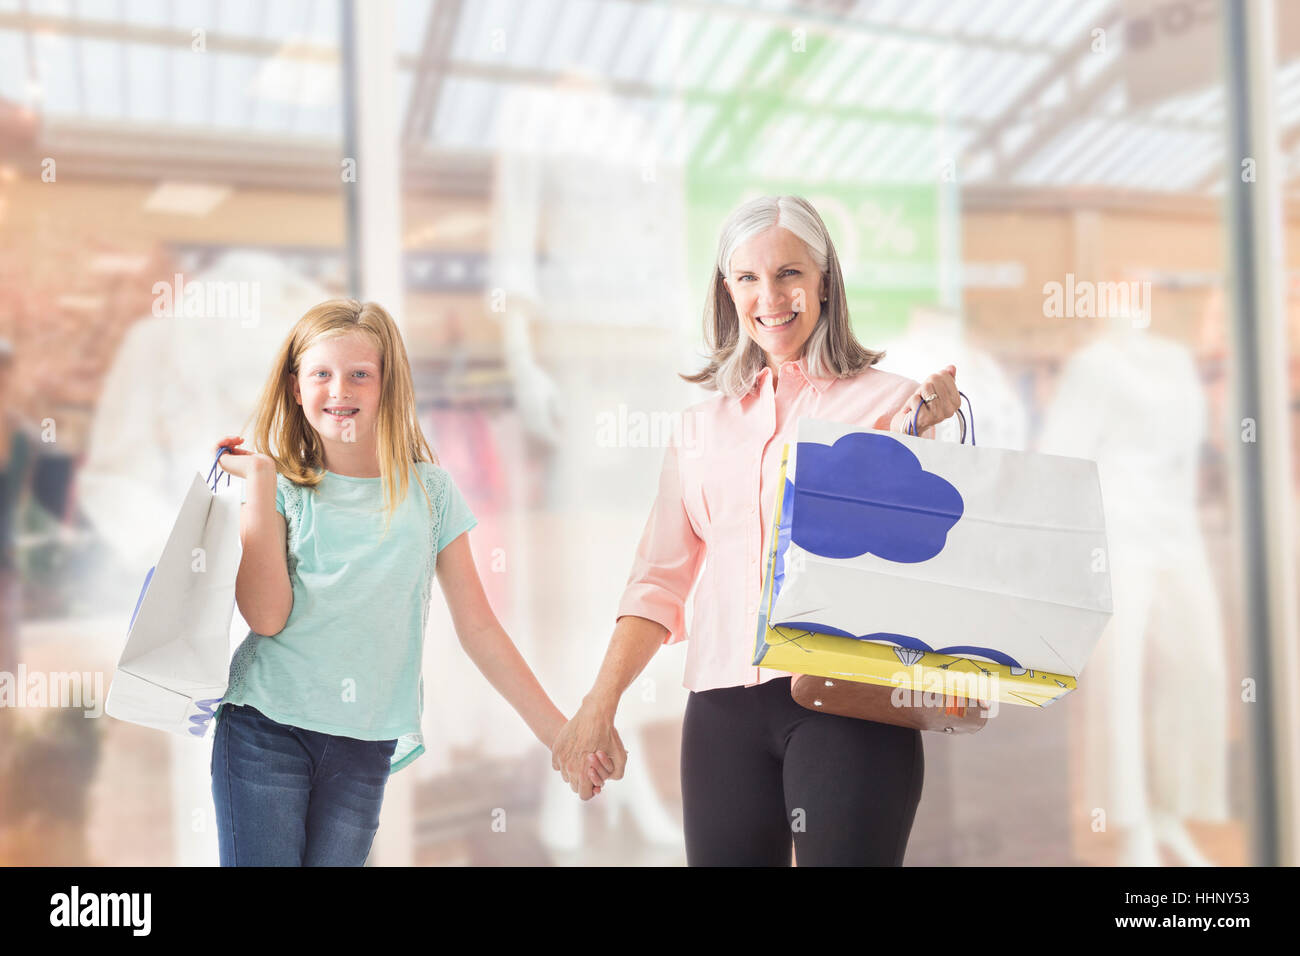 Portrait de grand-mère et petite-fille de race blanche holding shopping bags Banque D'Images